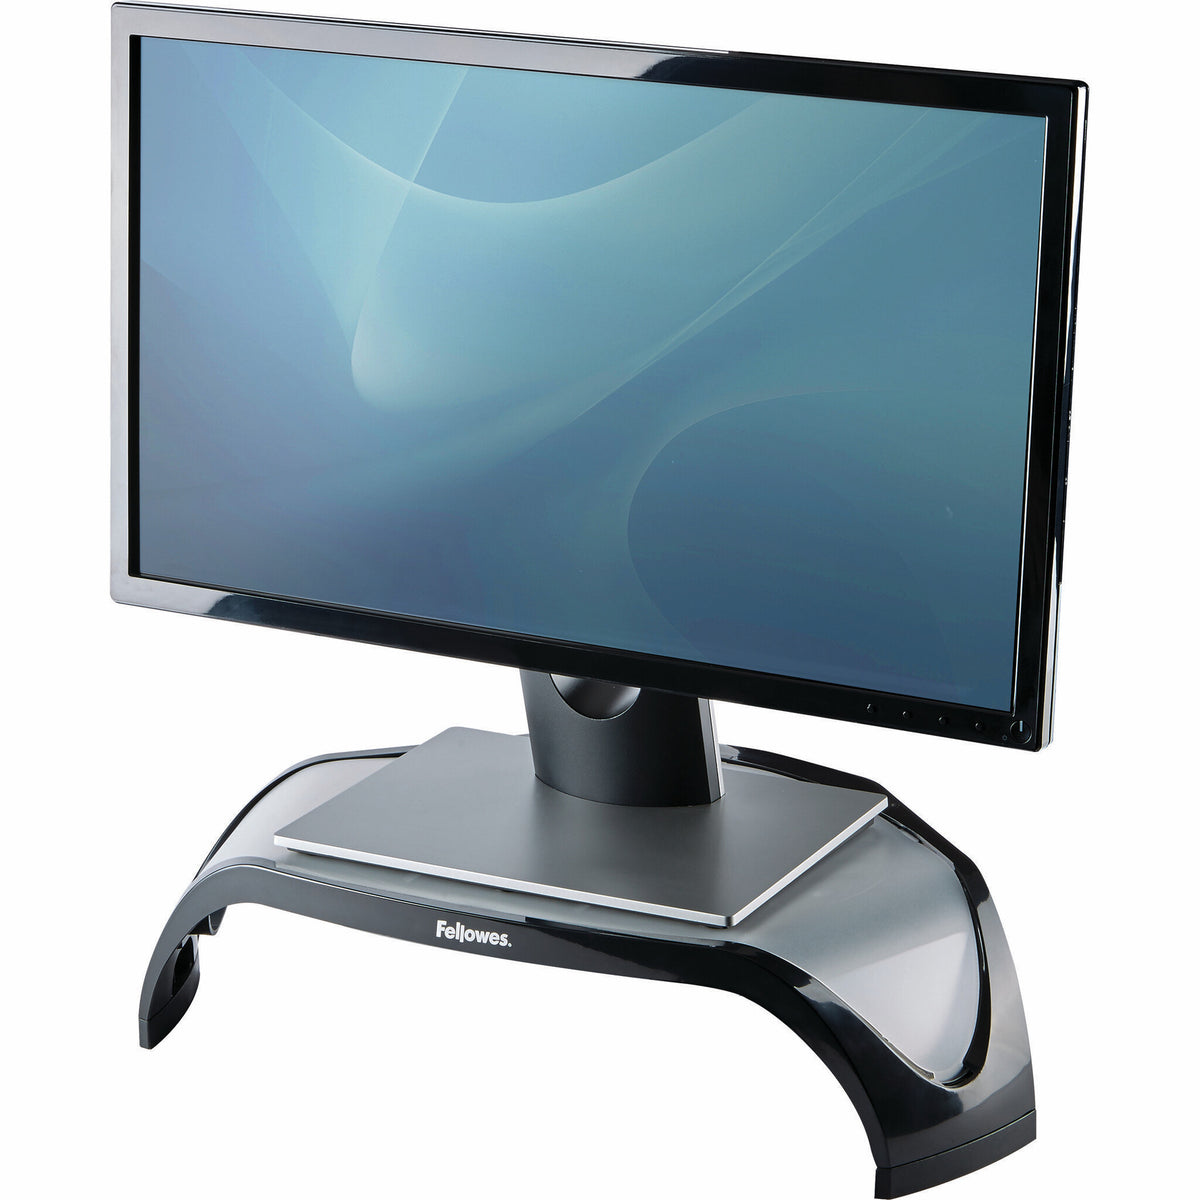 Fellowes 8020801 - Desk monitor riser